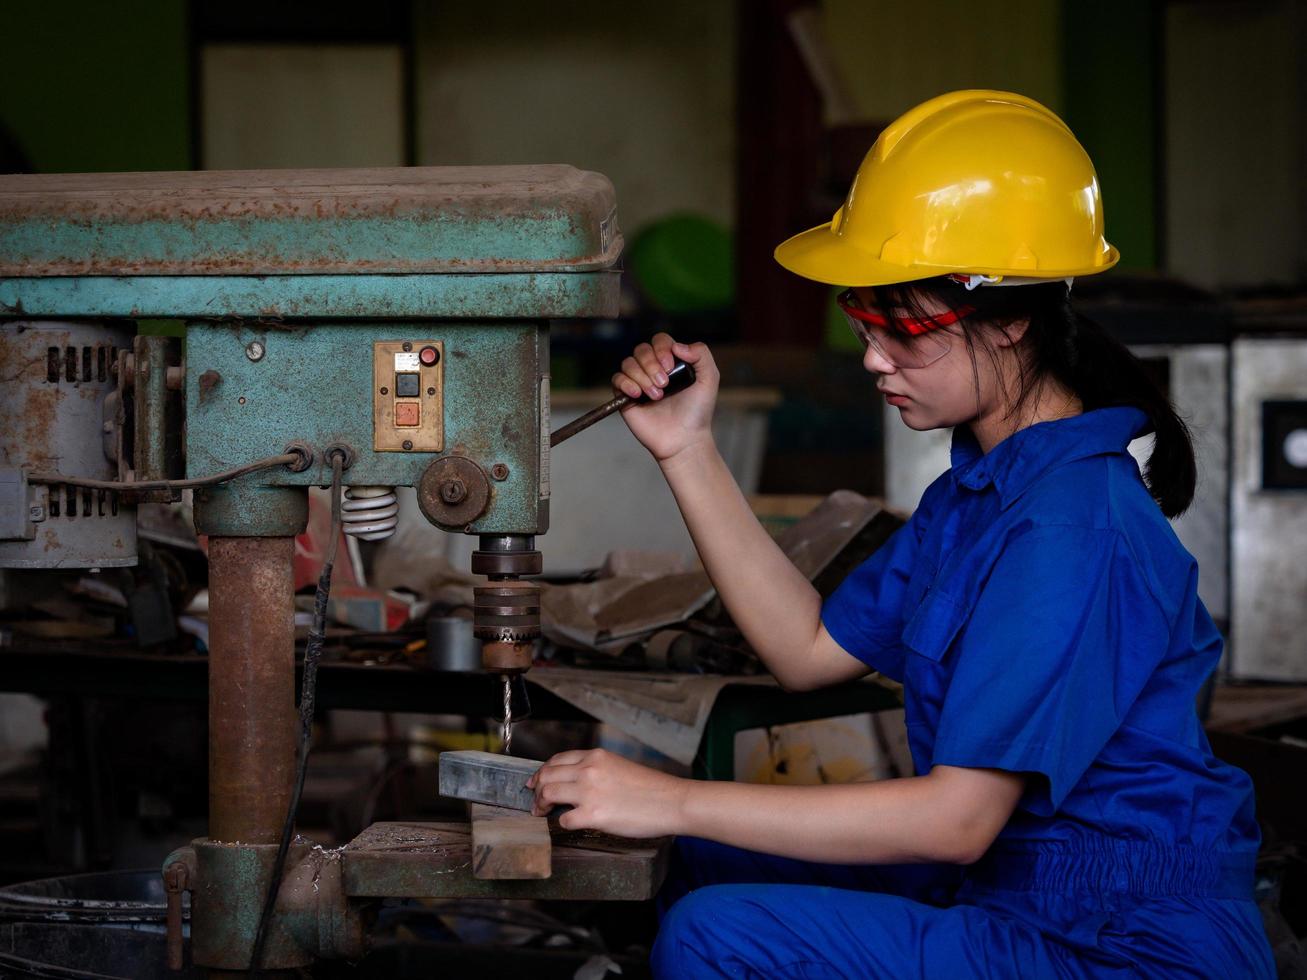 mujeres asiáticas con uniformes mecánicos están usando herramientas eléctricas para perforar barras de metal en la fábrica foto